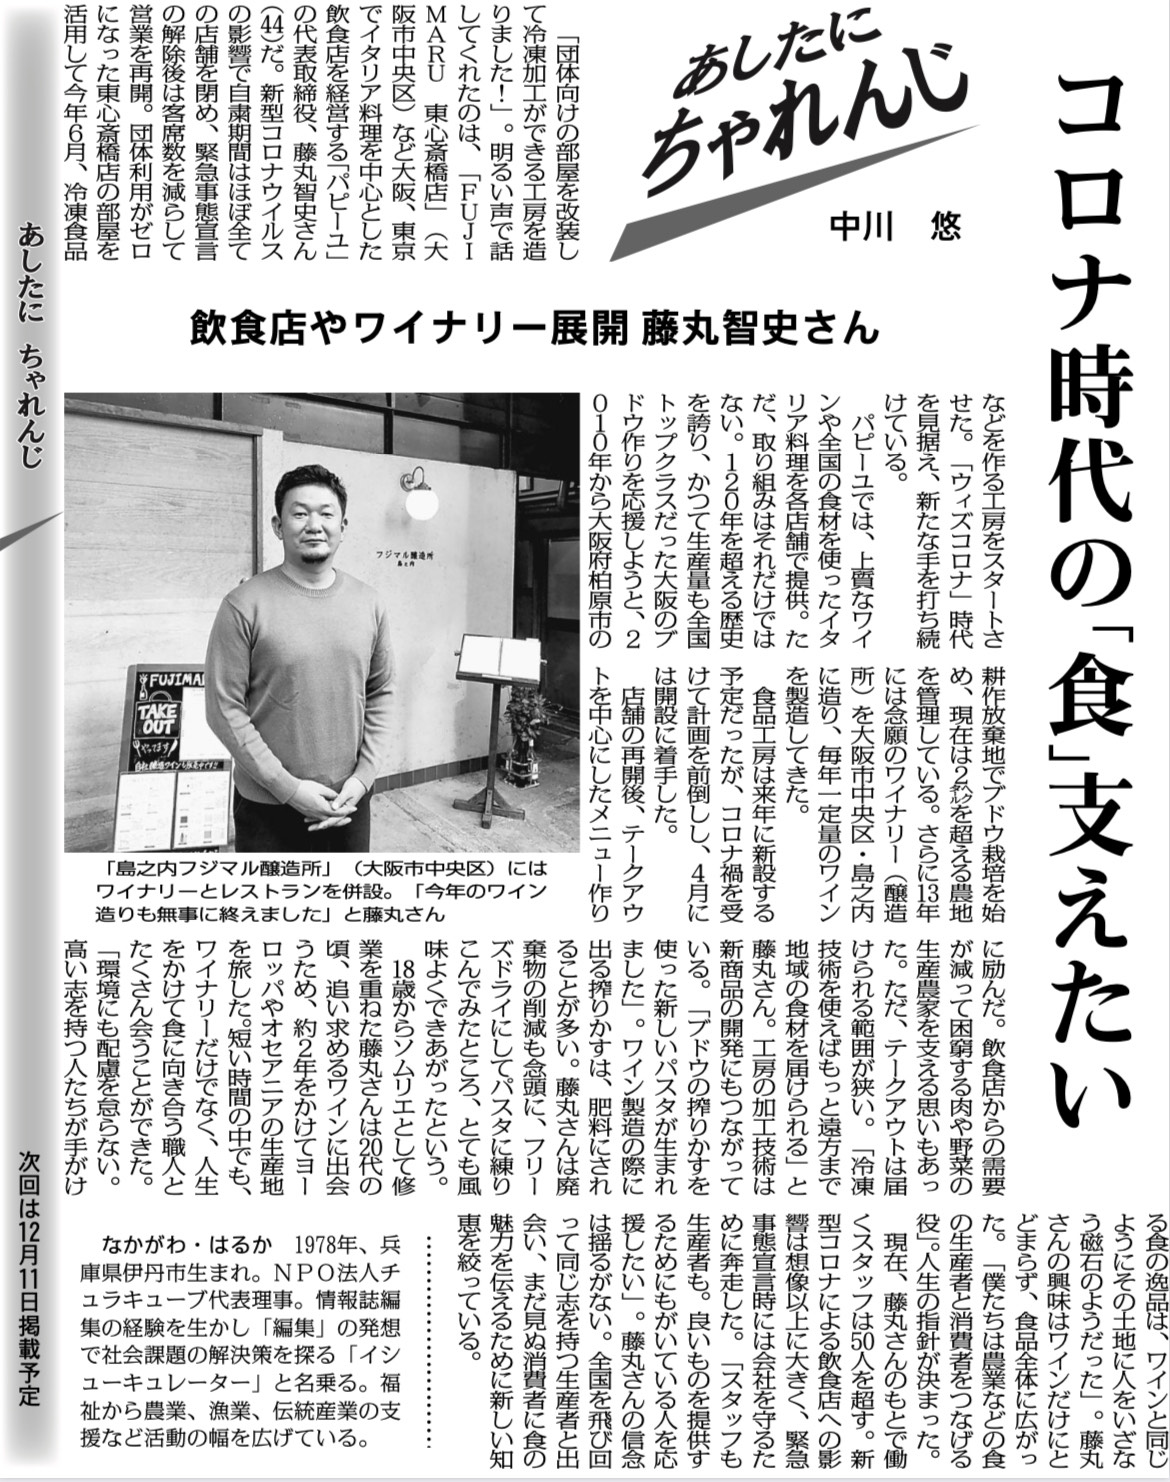 毎日新聞「あしたに、ちゃれんじ」ゲストは藤丸智史さん